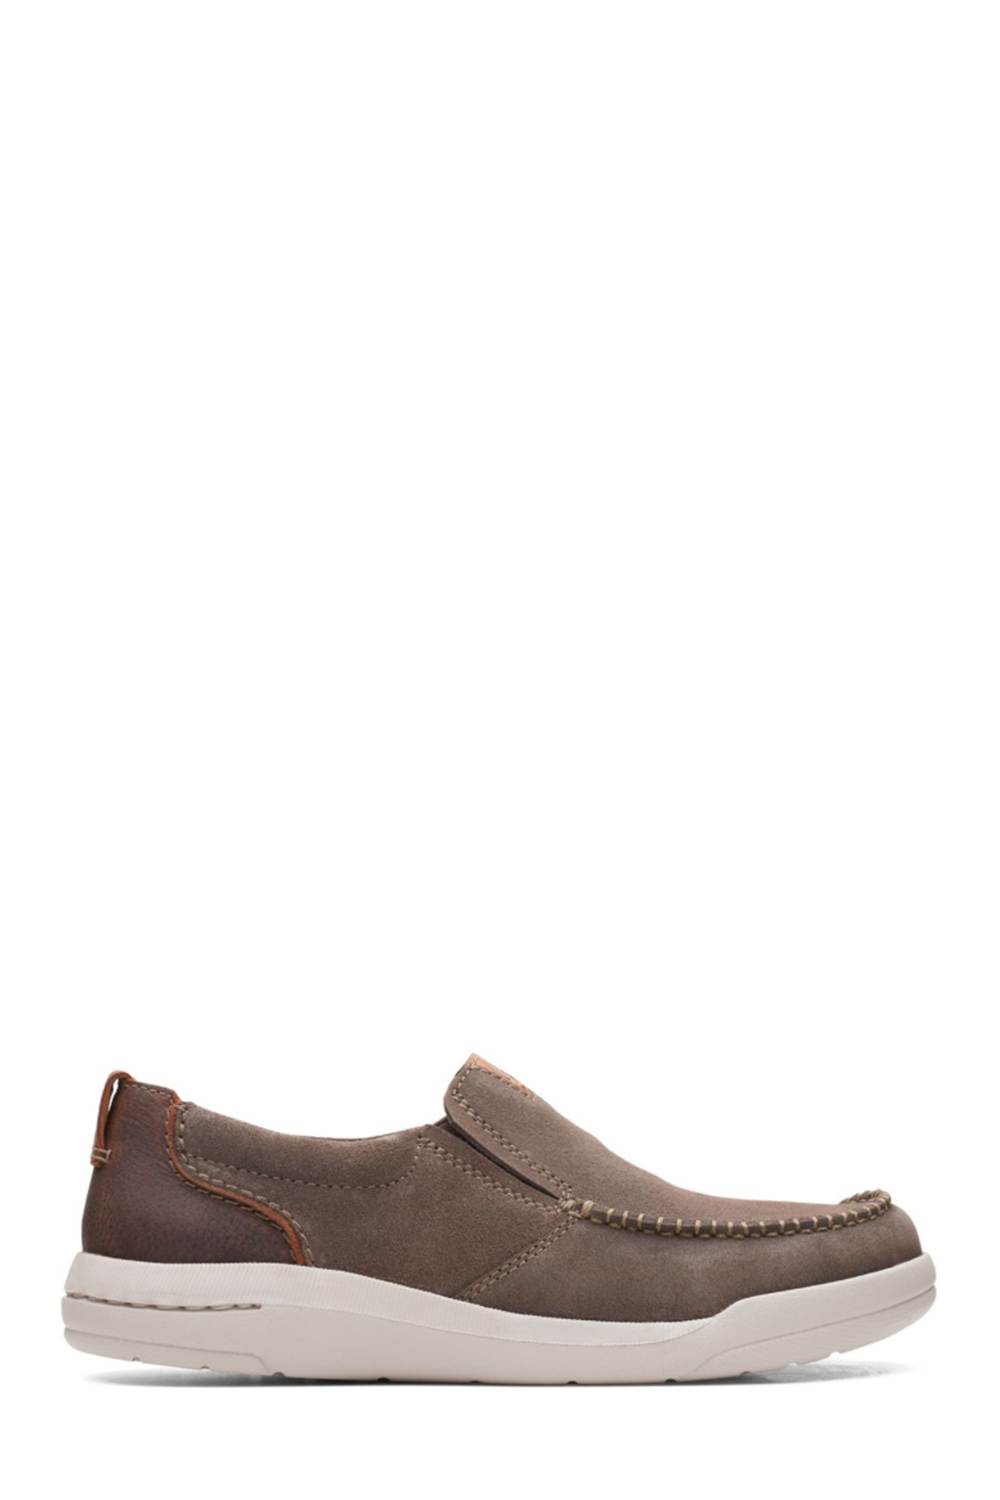 CLARKS MENS Driftway Step TAUPE Formal Shoes | Odel.lk